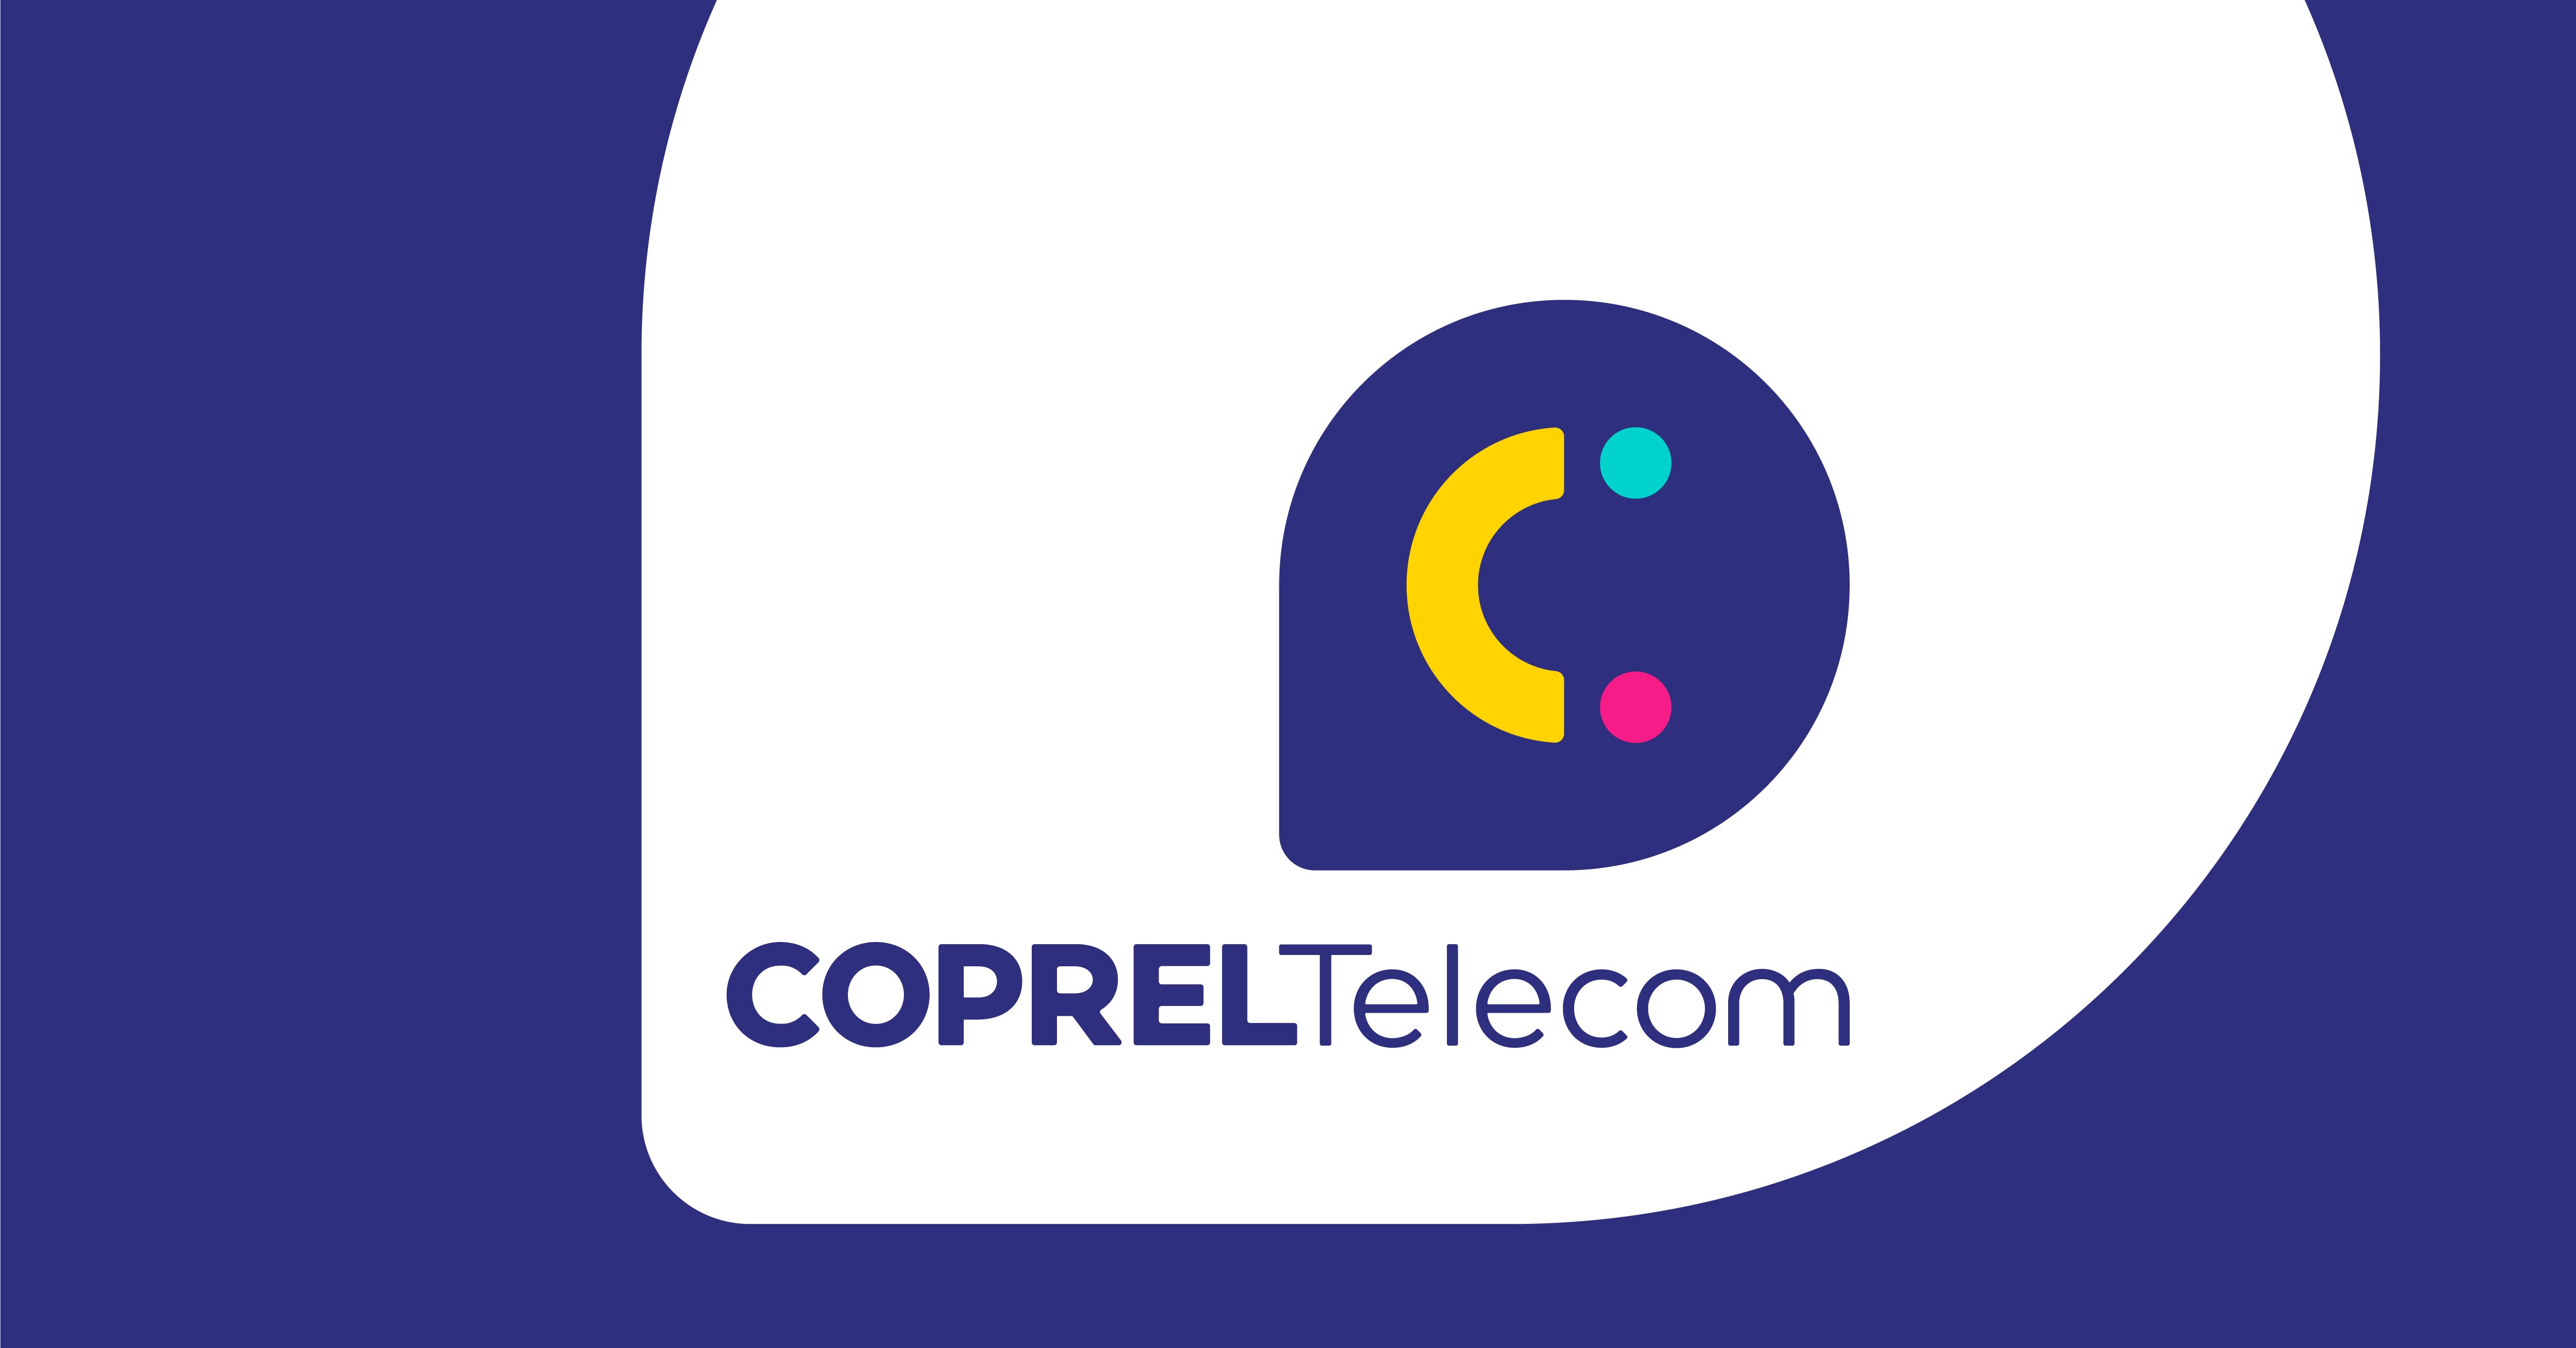 COPREL TELECOM: Nova marca, conectada com os valores e essência da empresa